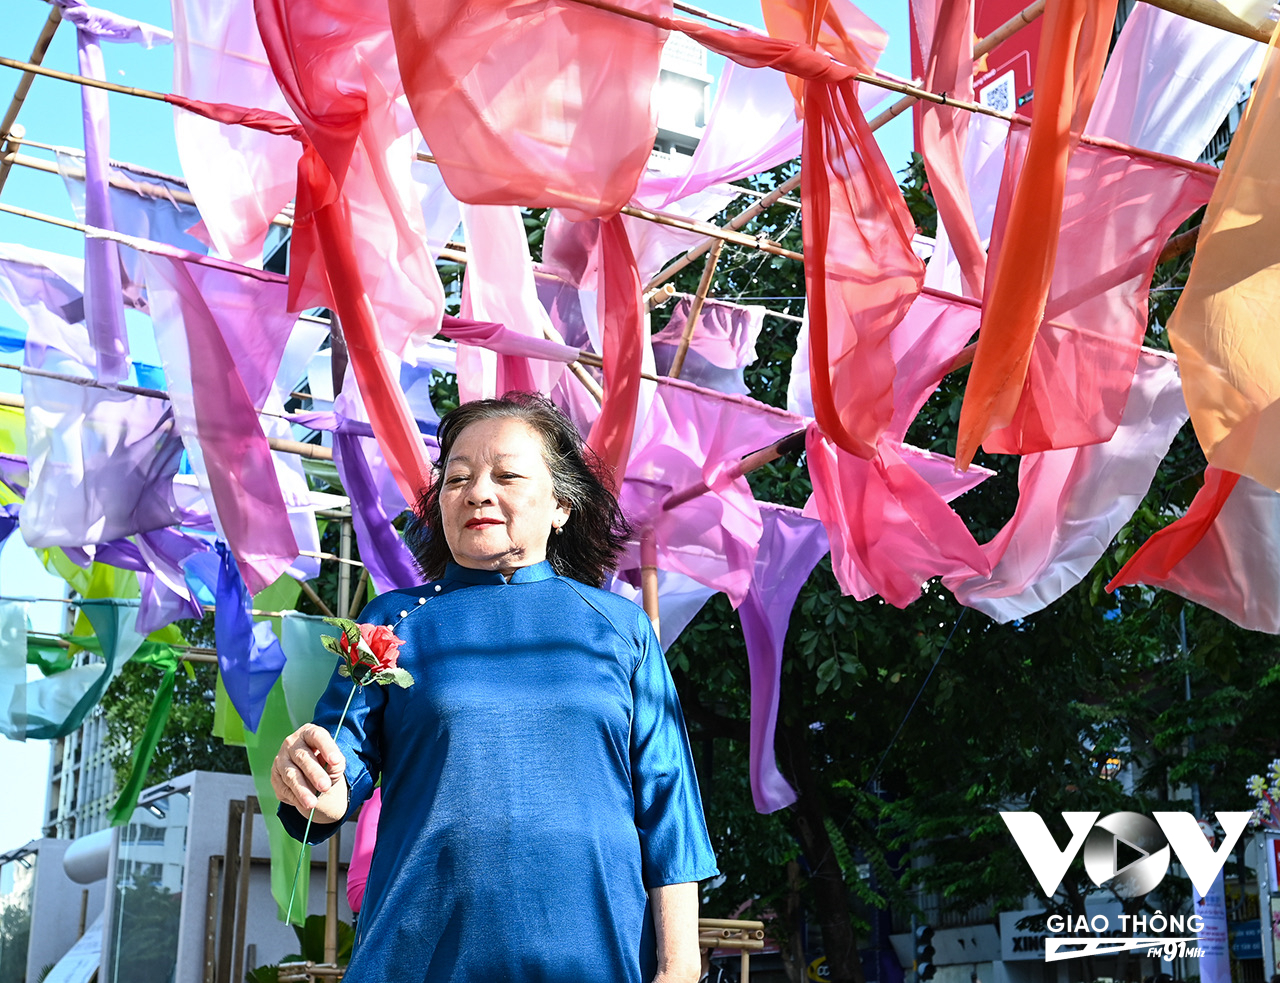 Cô Thu Nguyệt đến từ UBND phường 15, quận 4, năm nay đã gần 70 tuổi tham gia chương trình đồng diễn áo dài, chia sẻ: “Năm nào cô cũng tham gia đồng diễn để hưởng ứng, ủng hộ áo dài truyền thống. Năm ngoái đông lắm, có nhiều người nổi tiếng đến tham gia đồng diễn hơn năm nay.”